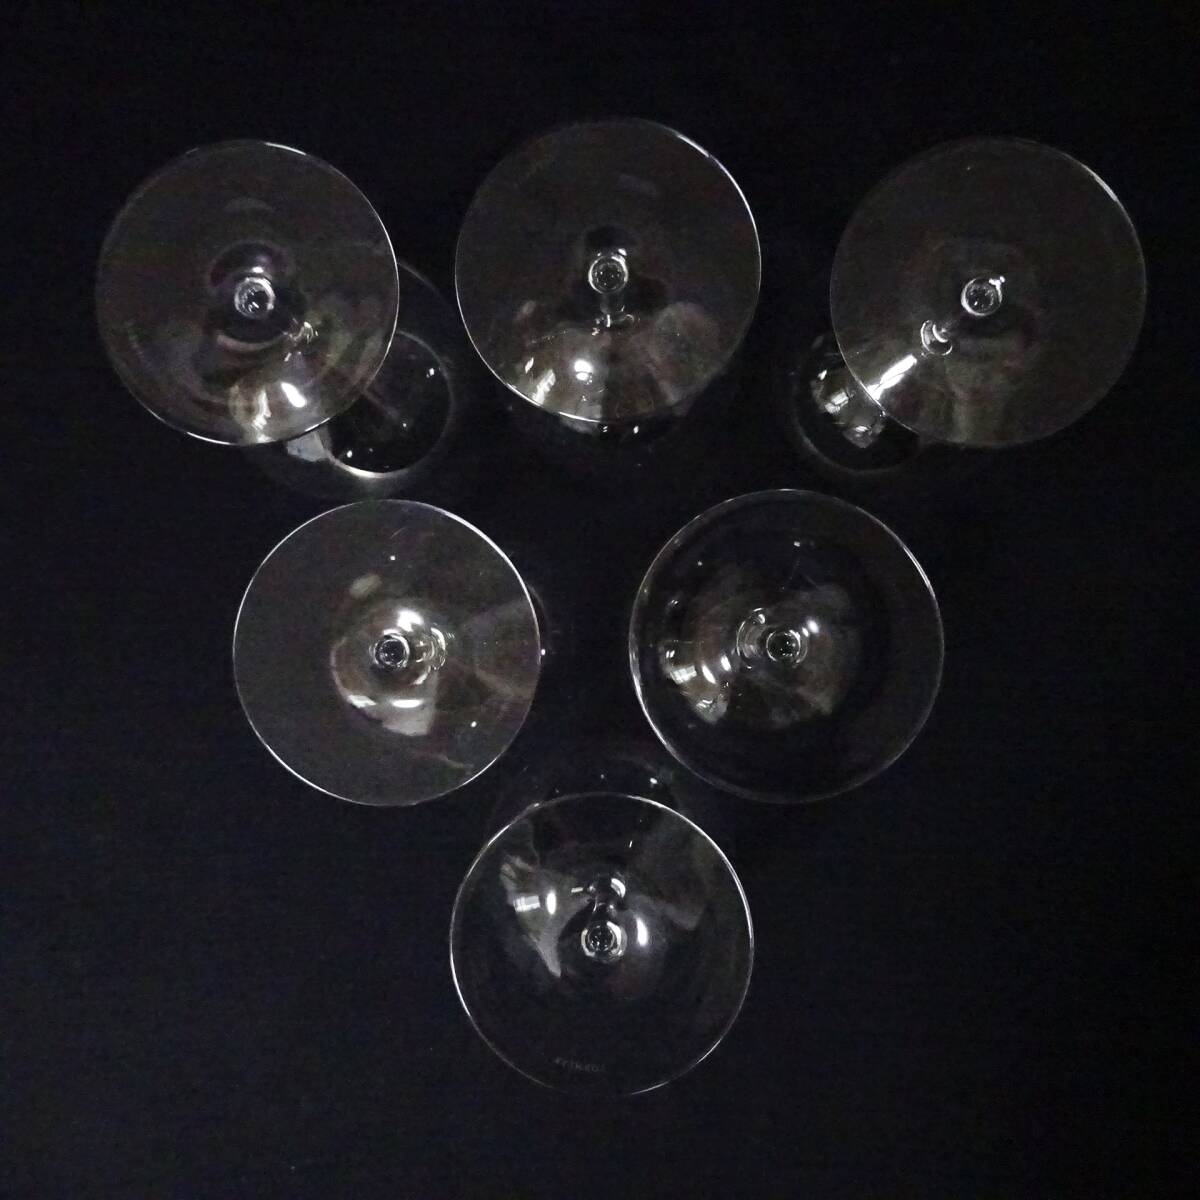  Lobb ma year ba Rely na wine glass 6 legs summarize set 18.5cm LOBMEYR 100 size shipping K-2617875-209-mrrz